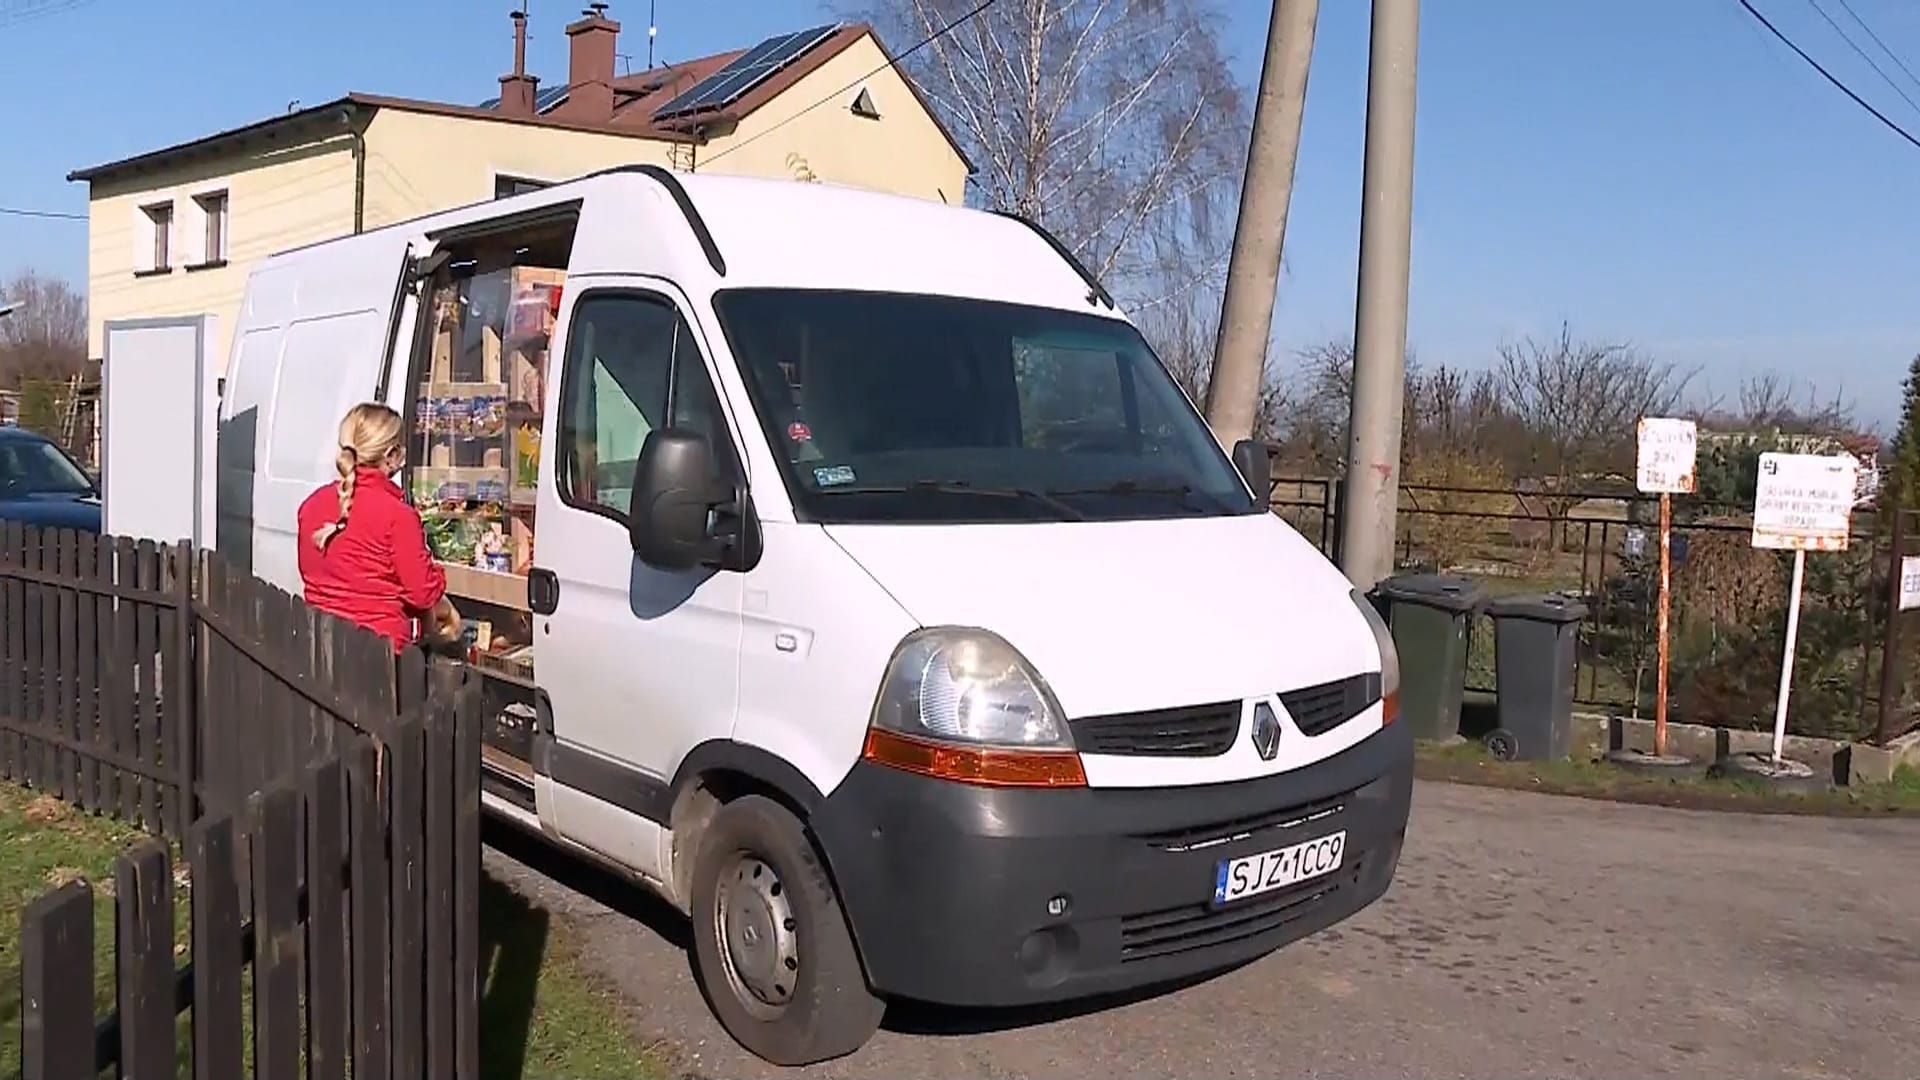 Polský obchodník zásobuje surovinami obec v Karviné. Ta nemá žádný obchod s potravinami.